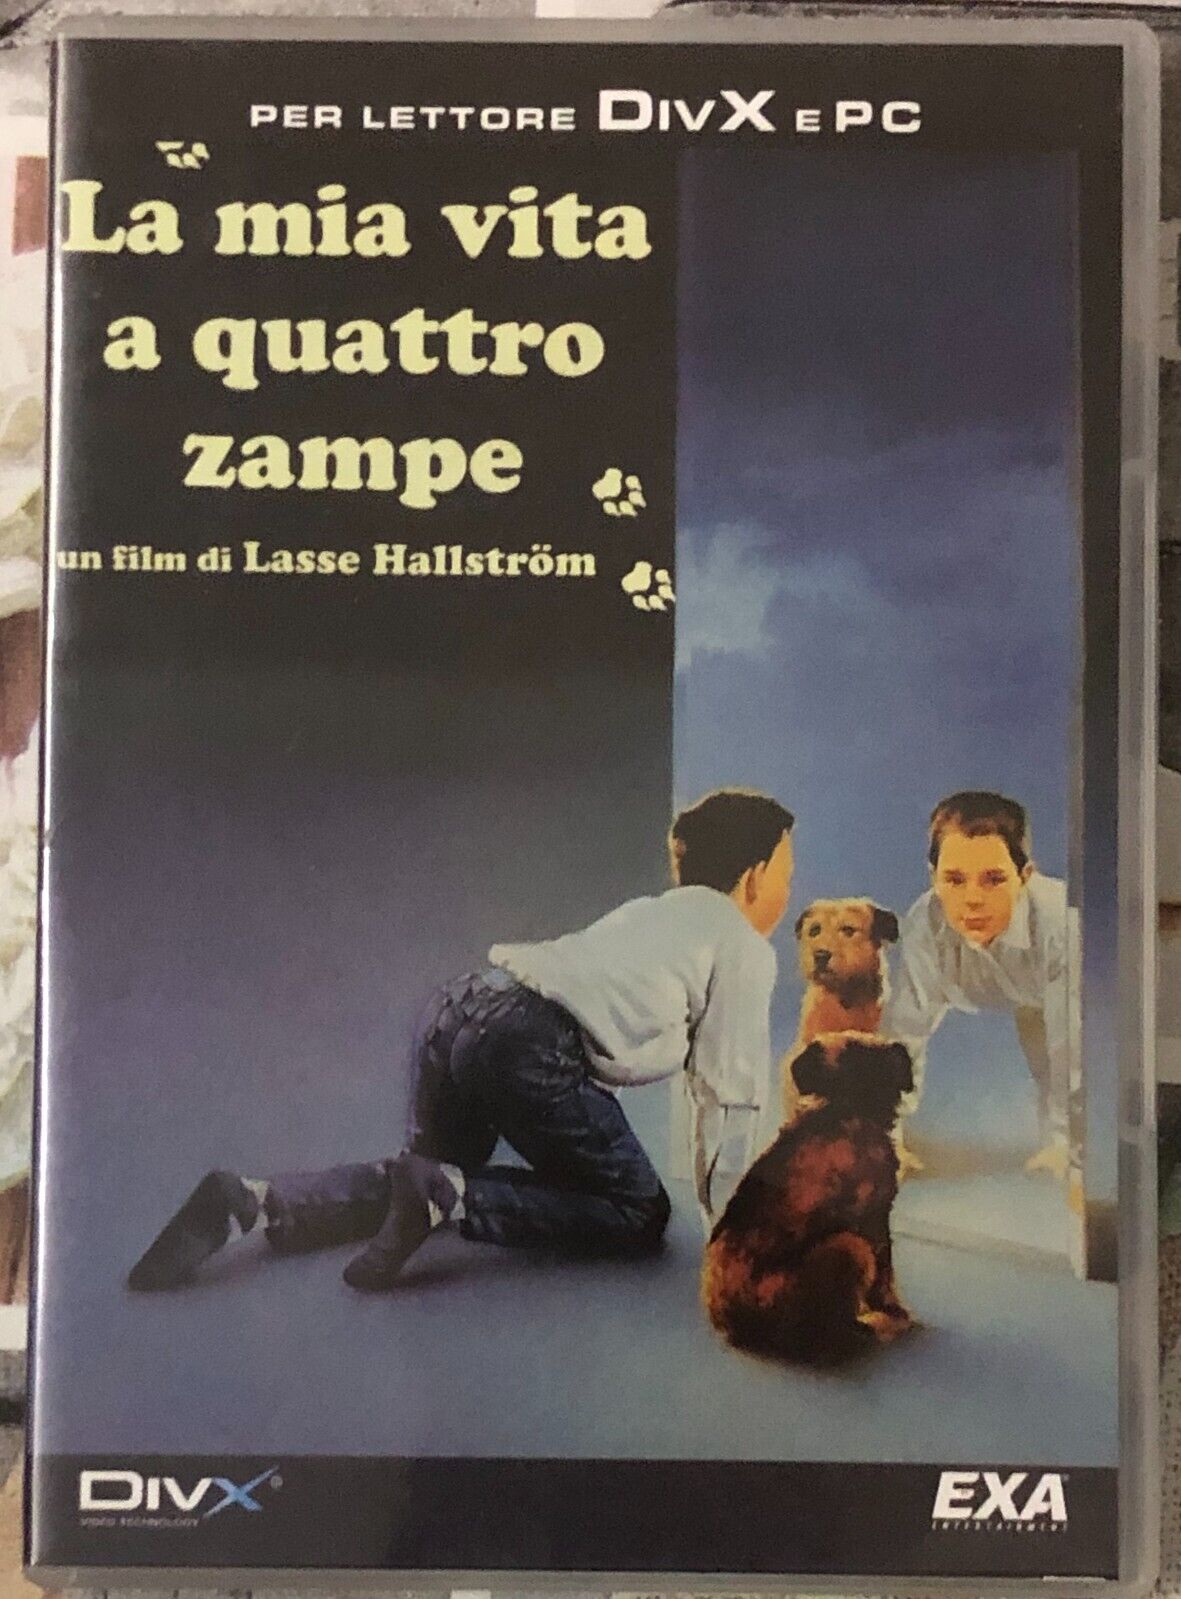 La mia vita a quattro zampe DVD di Lasse Hallstr?m, 1985, Exa Entertainment